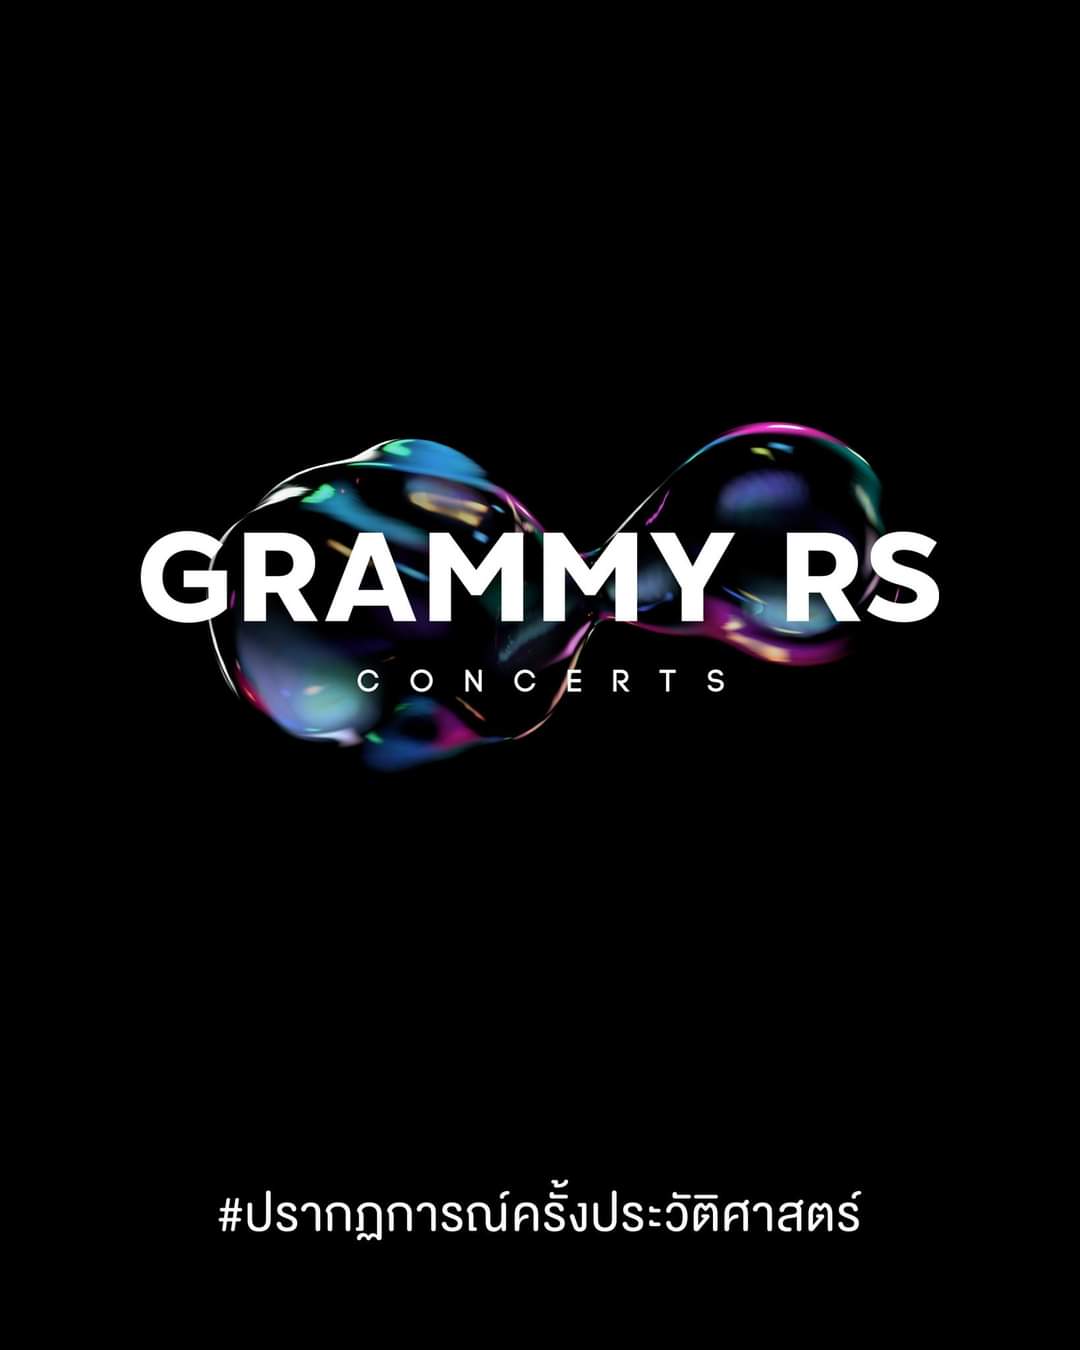 สิ้นสุดการรอคอย! Grammy RS Concerts ปรากฏการณ์ครั้งประวัติศาสตร์ของวงการเพลงเมืองไทย